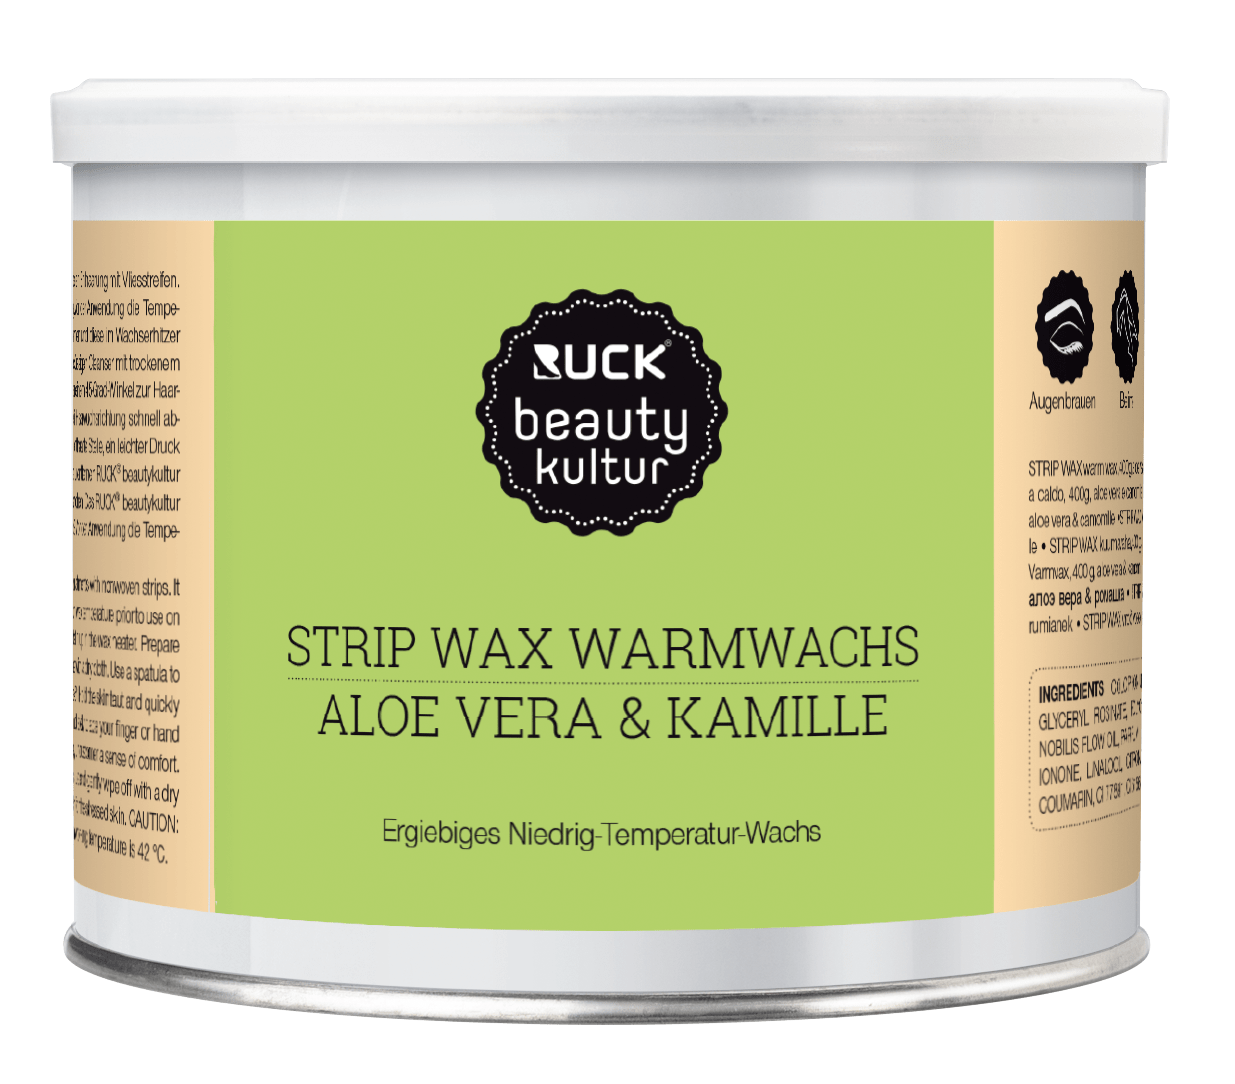 RUCK beautykultur - STRIP WAX Warmwachs, 400 g in grün